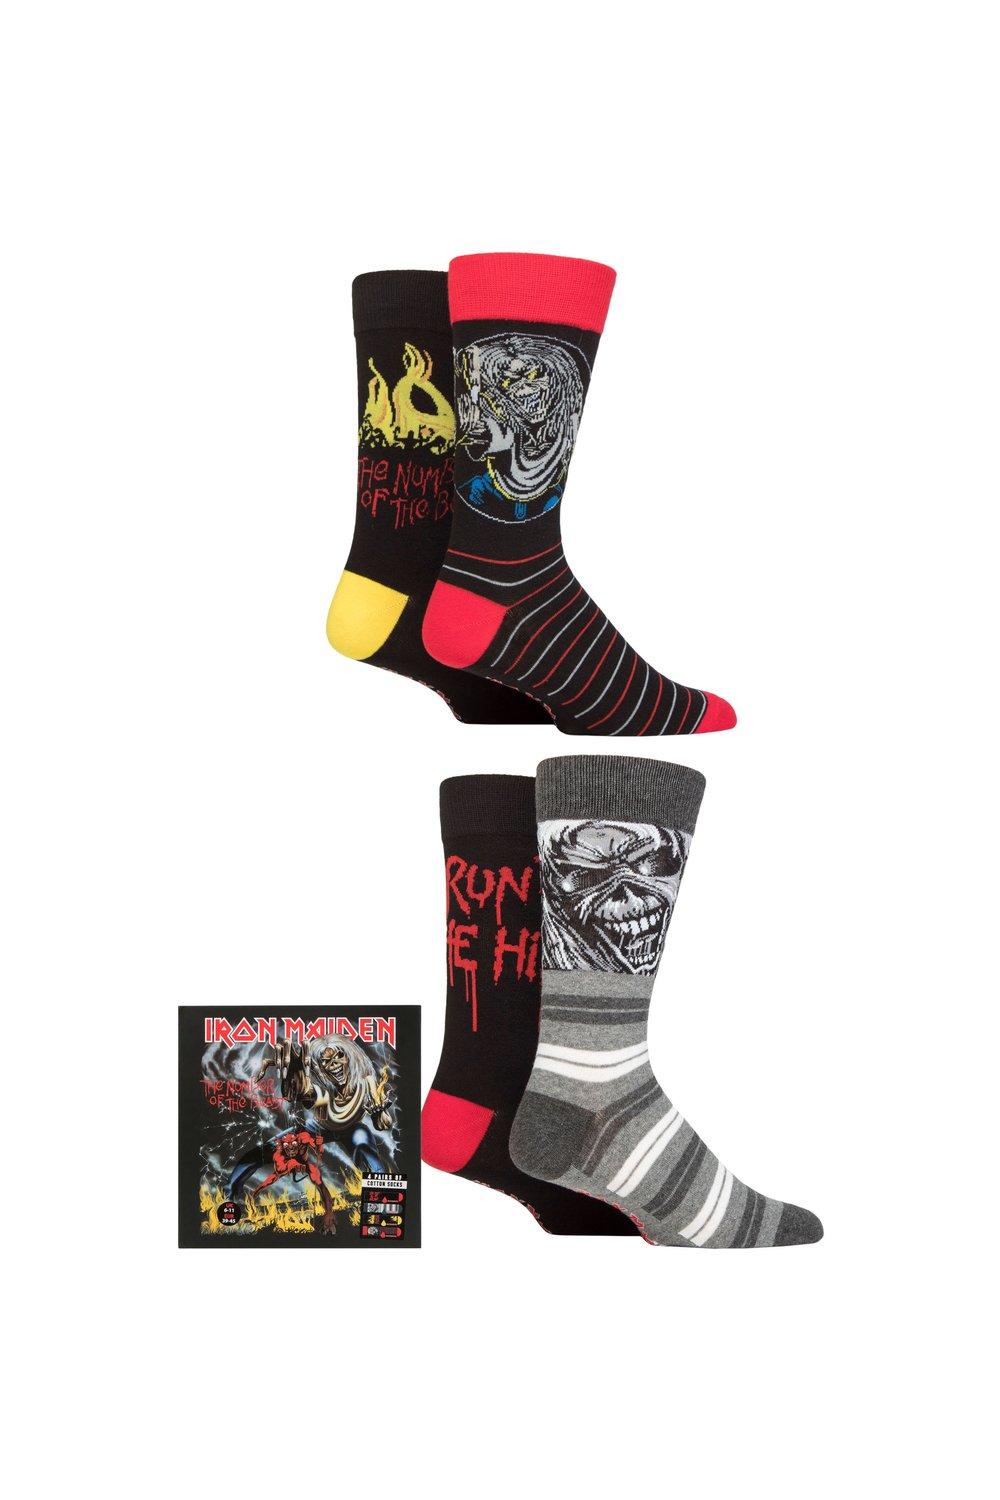 Iron Maiden, 4 пары хлопковых носков в подарочной упаковке, эксклюзивно для SOCKSHOP, мультиколор